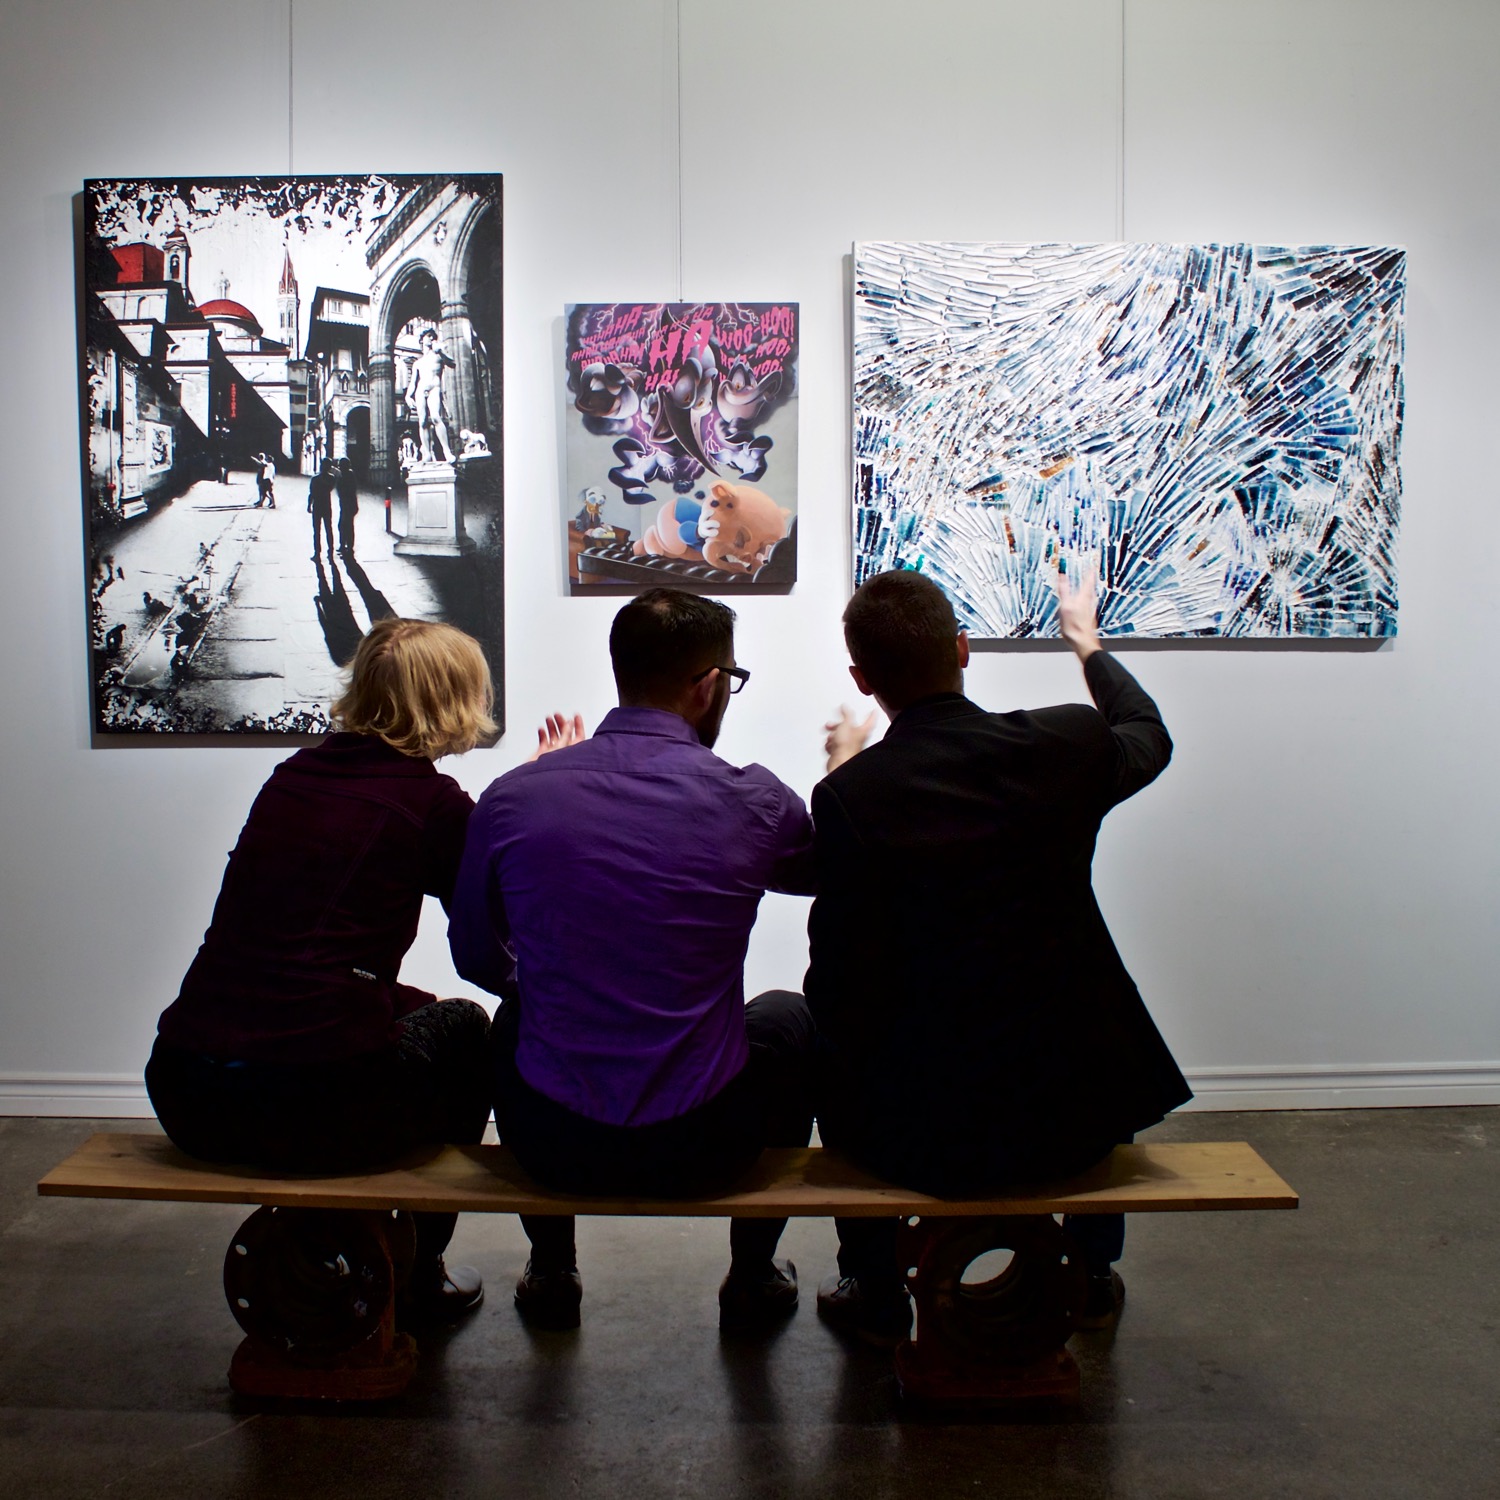 Les trois artistes émergents montréalais Denise Buisman Pilger, Jono Doiron et Louis-Bernard St-Jean et leurs œuvres respectives